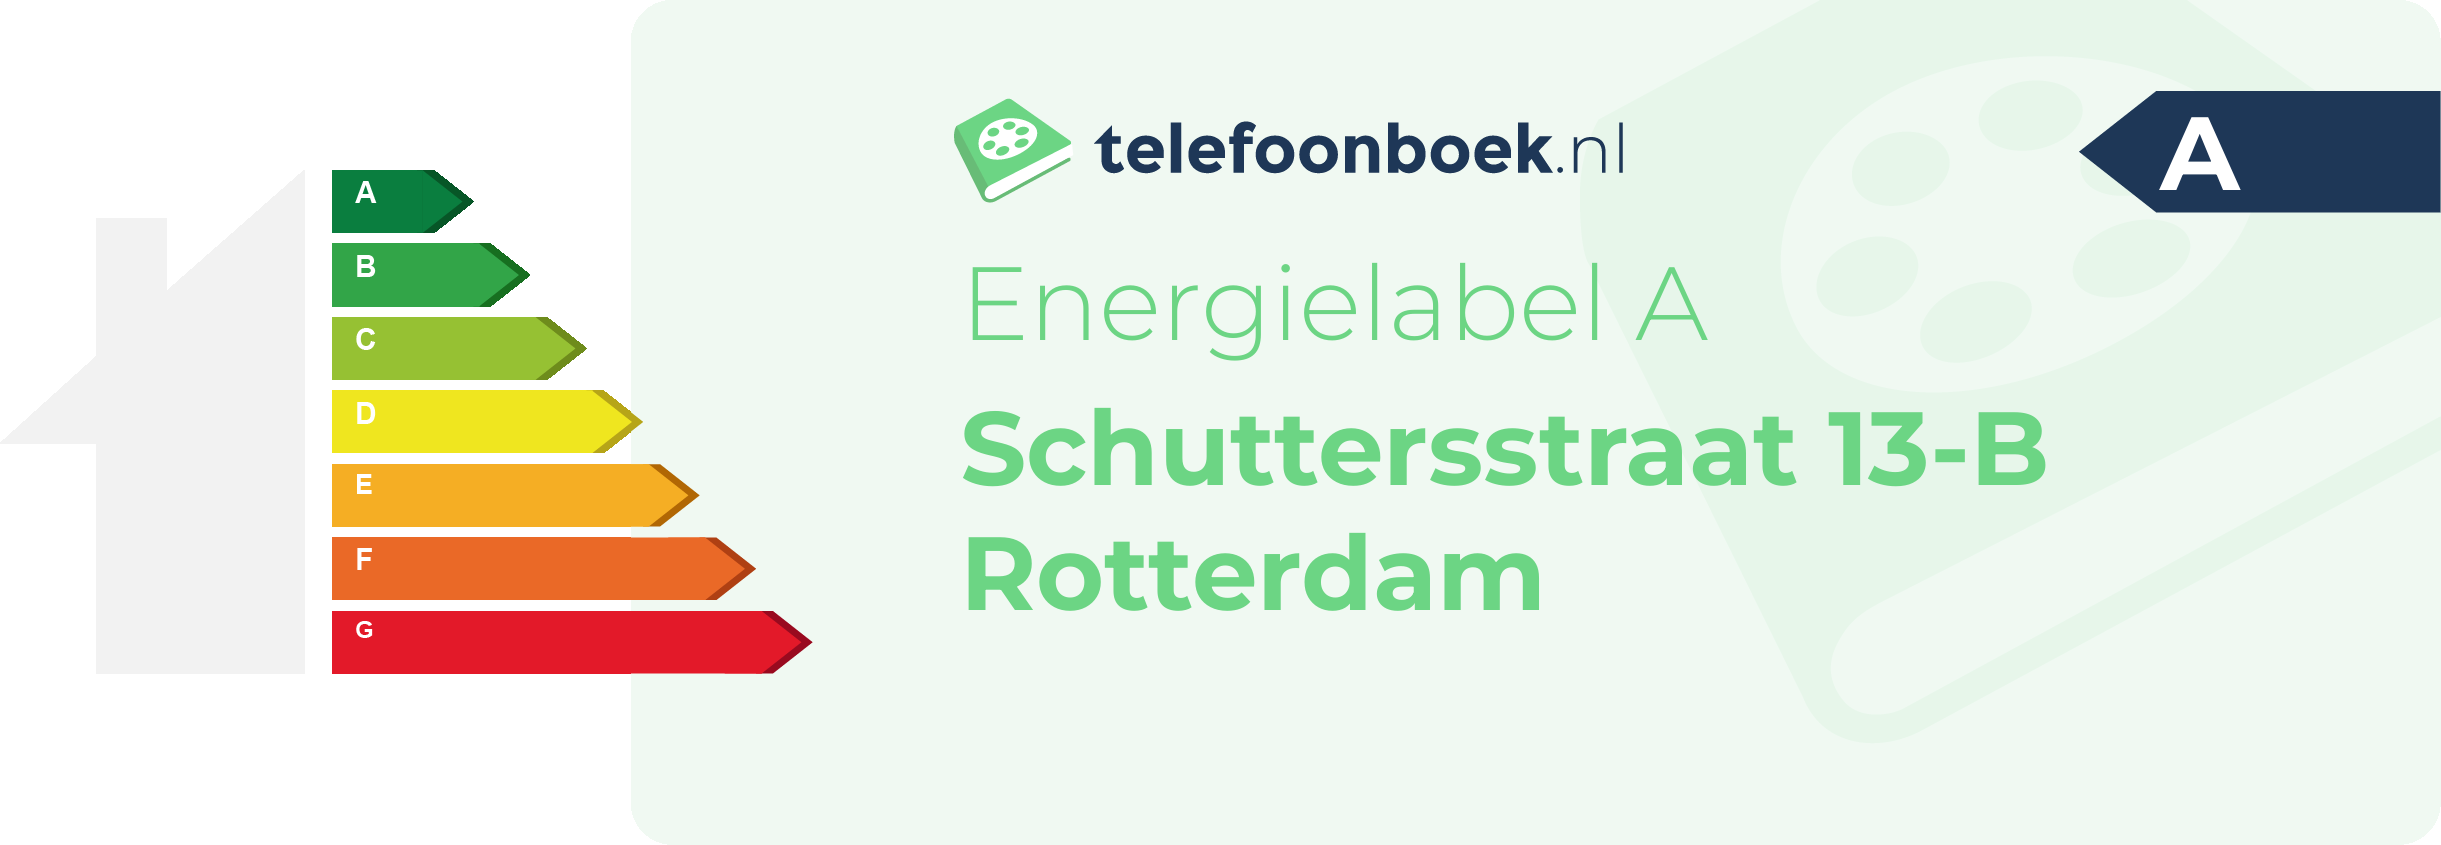 Energielabel Schuttersstraat 13-B Rotterdam